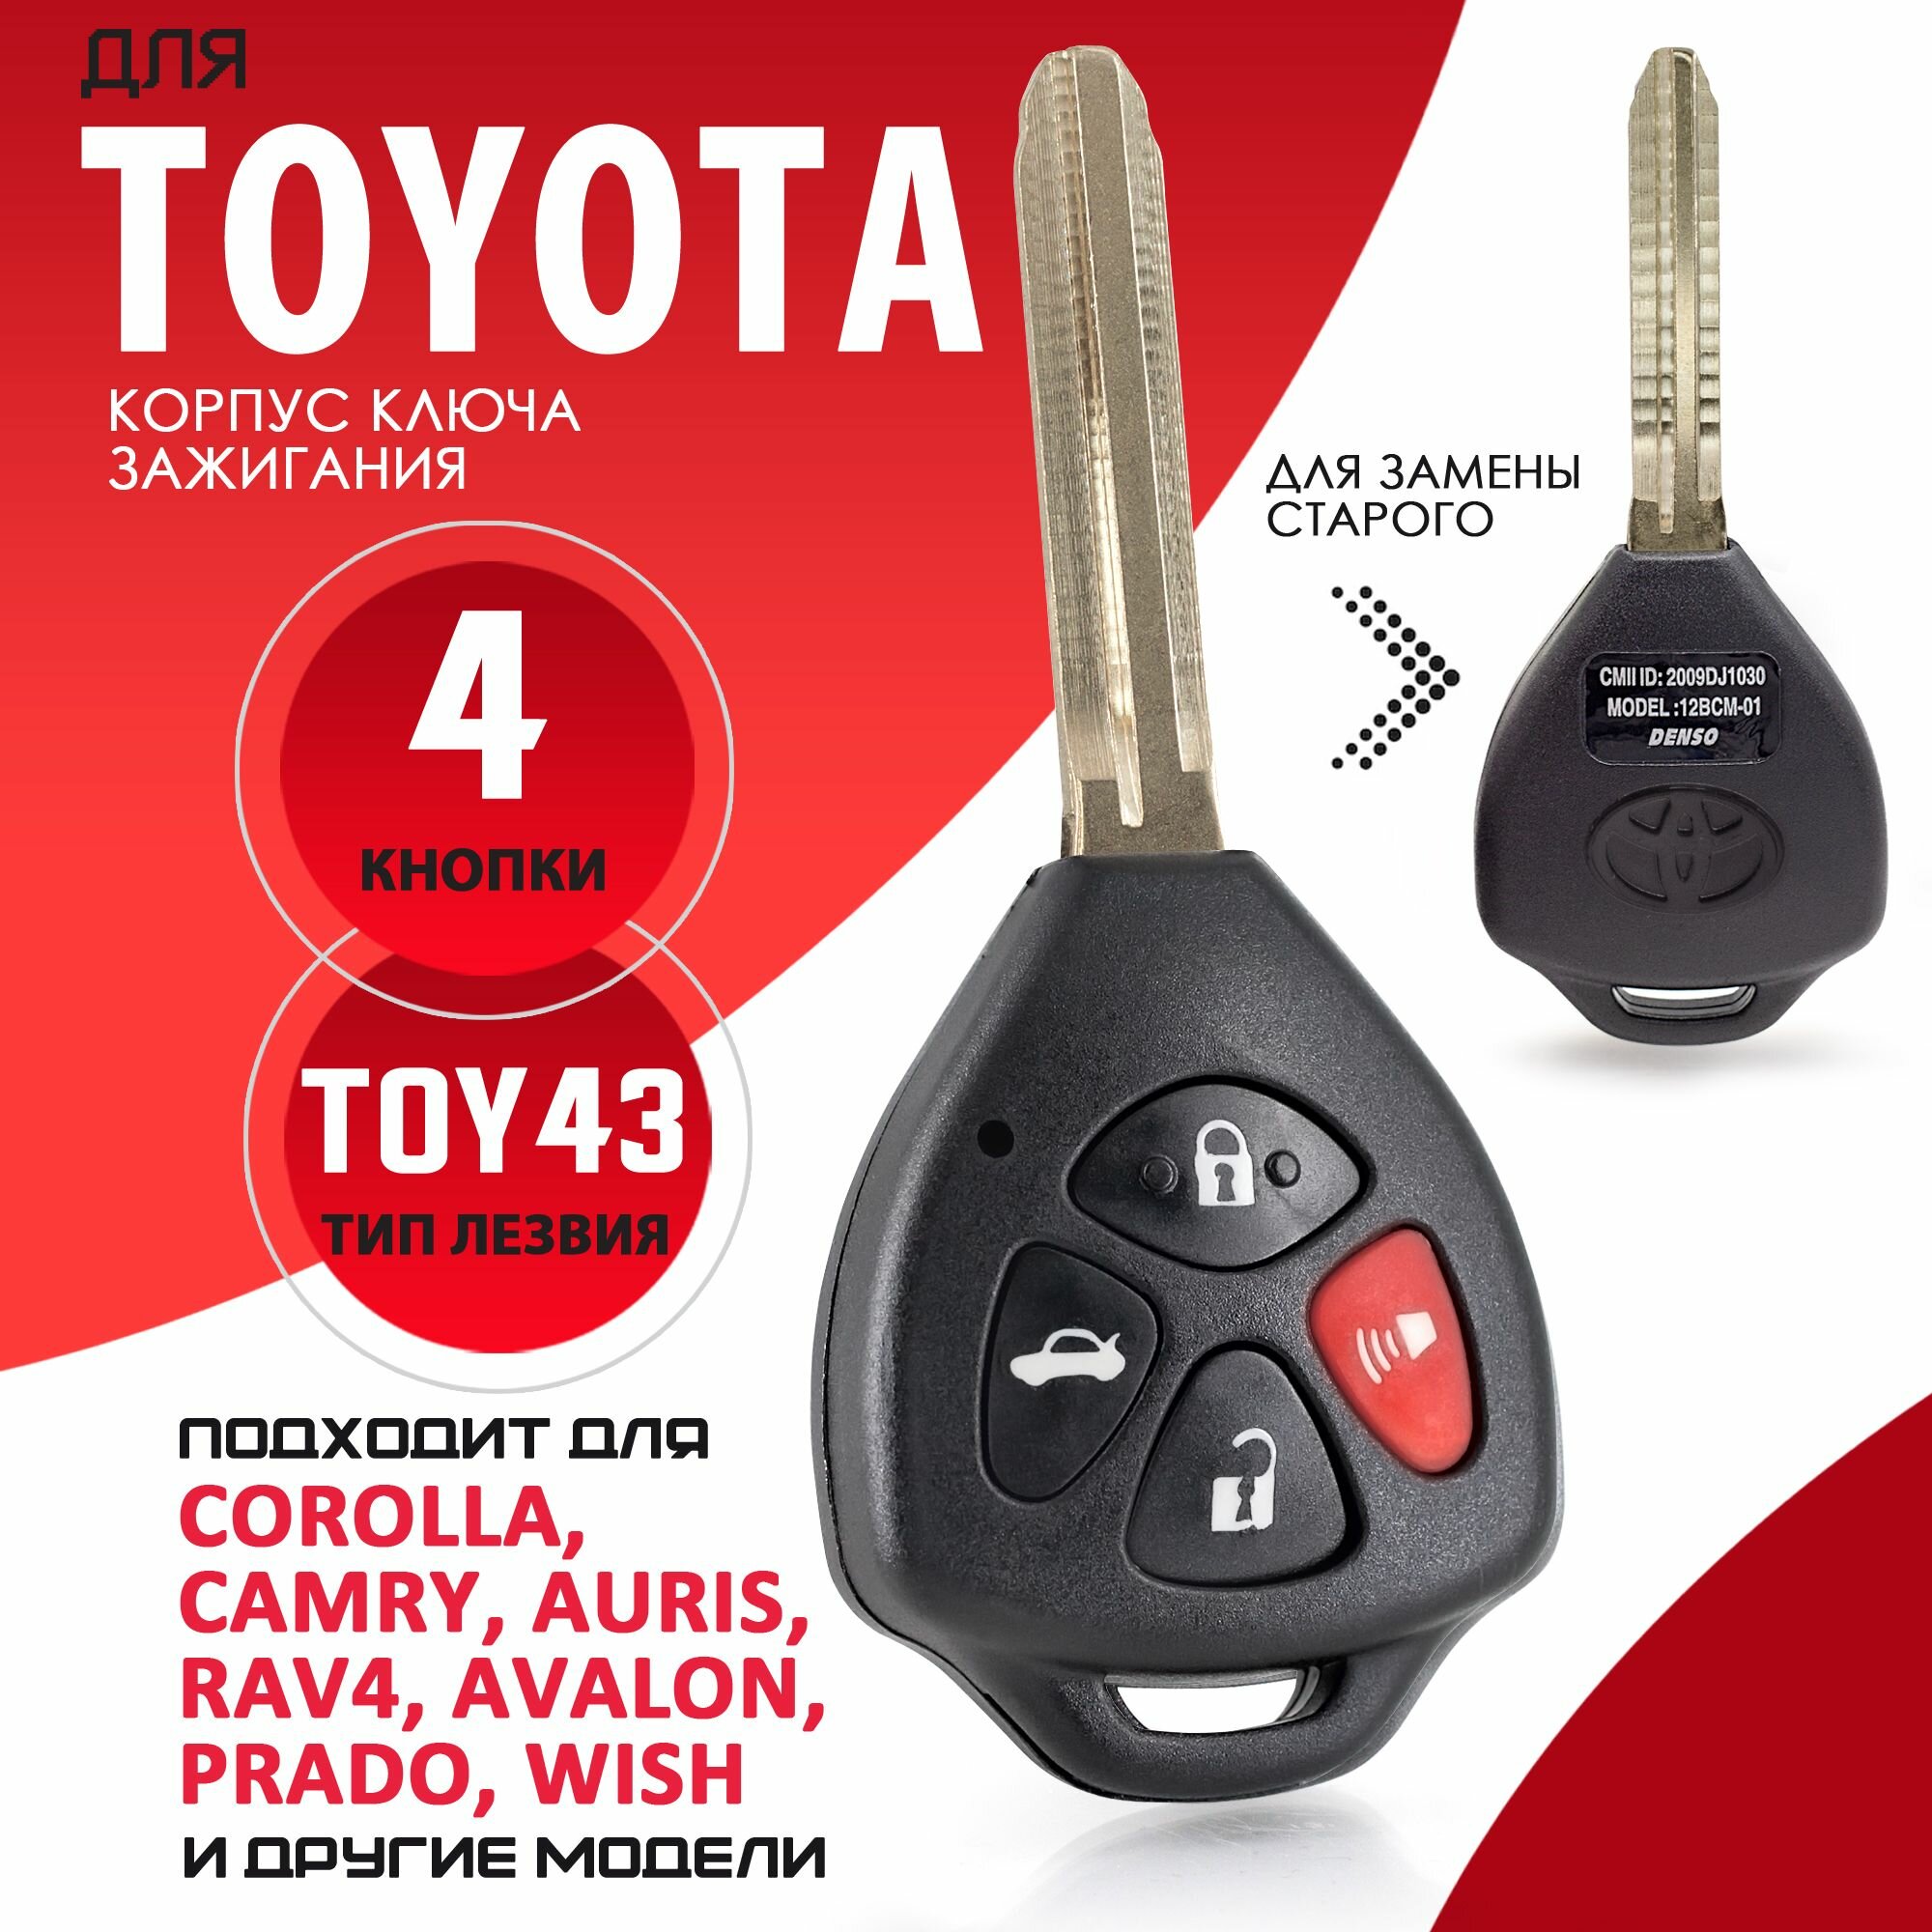 Корпус ключа зажигания для Toyota / Тойота лезвие TOY43 - 3 кнопки / Брелок автомобильный